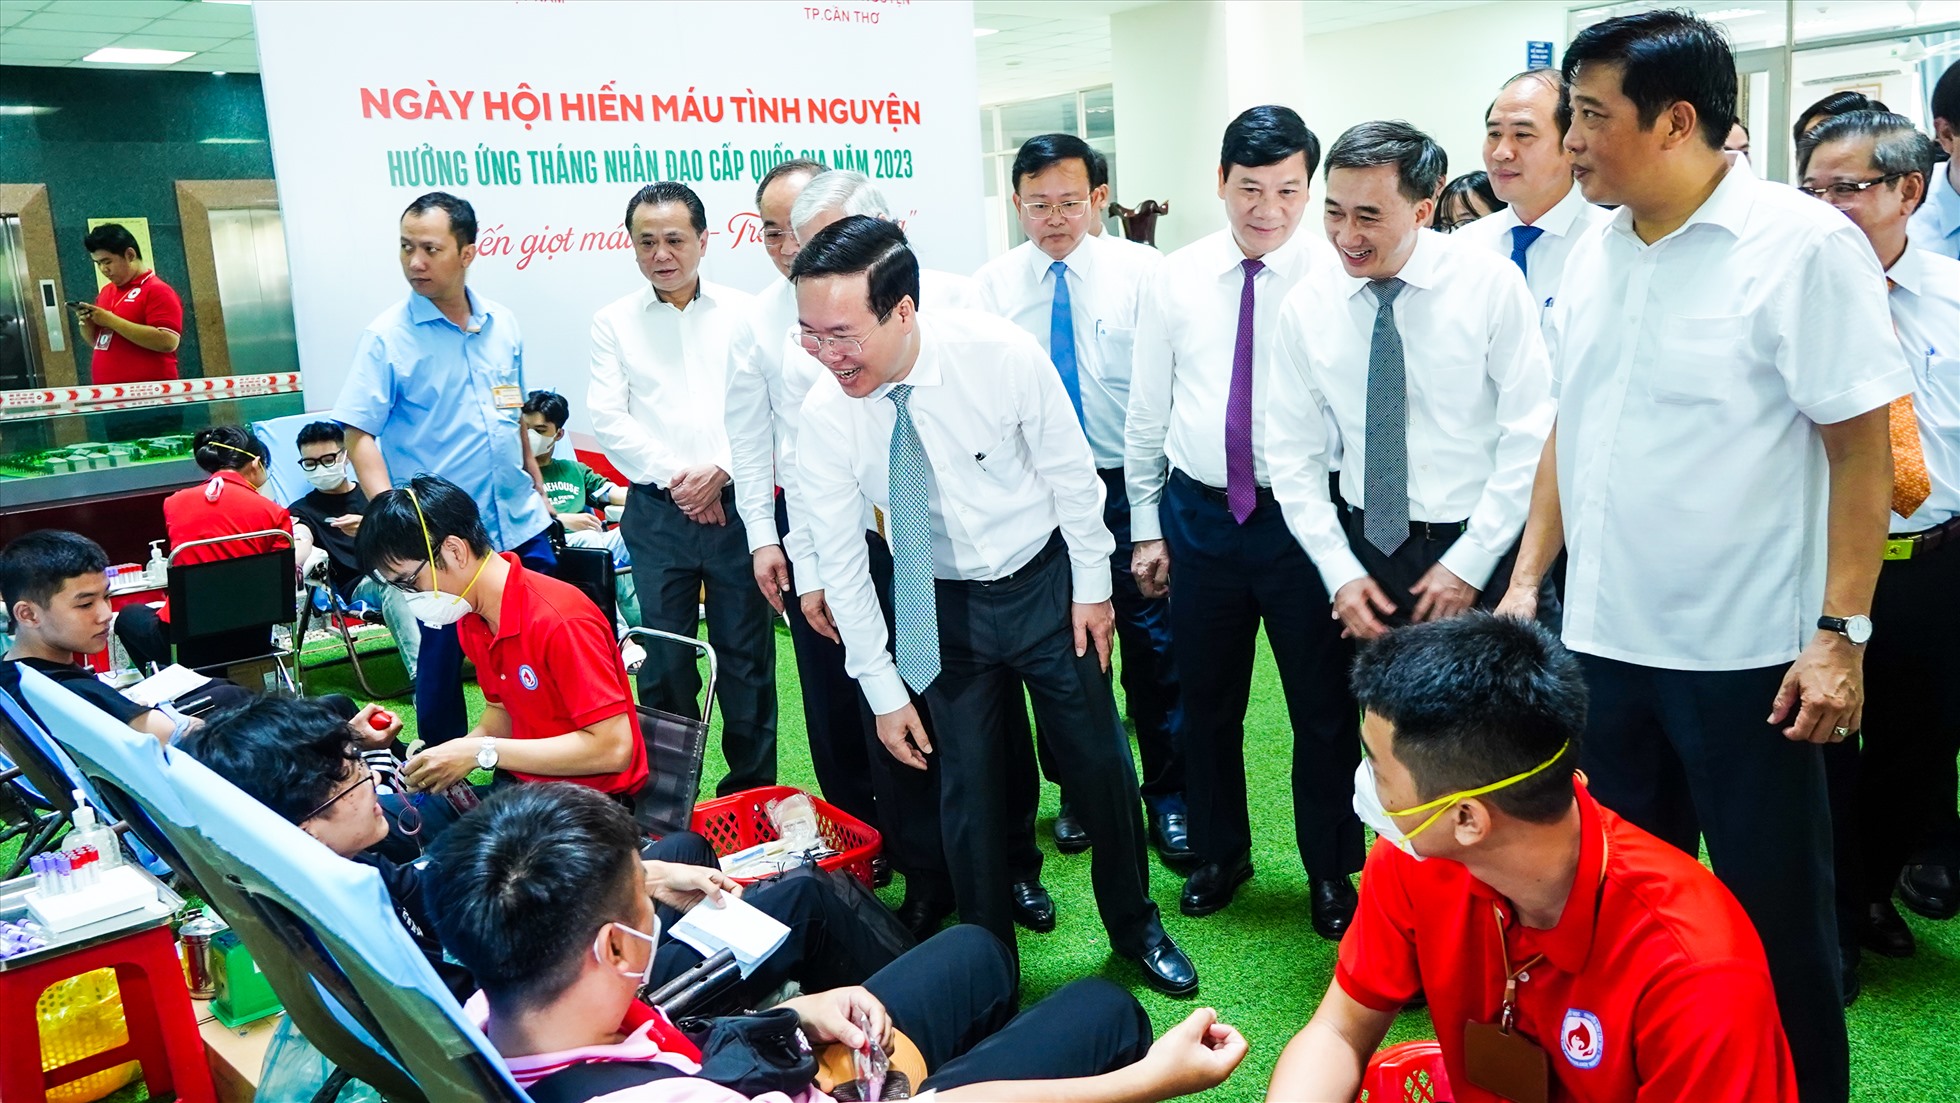 Chủ tịch nước Võ Văn Thưởng; Chủ tịch Ủy ban Trung ương MTTQ Việt Nam Đỗ Văn Chiến; Phó Thủ tướng Chính phủ Trần Lưu Quang thăm động viên những người tham gia hiến máu nhân đạo.